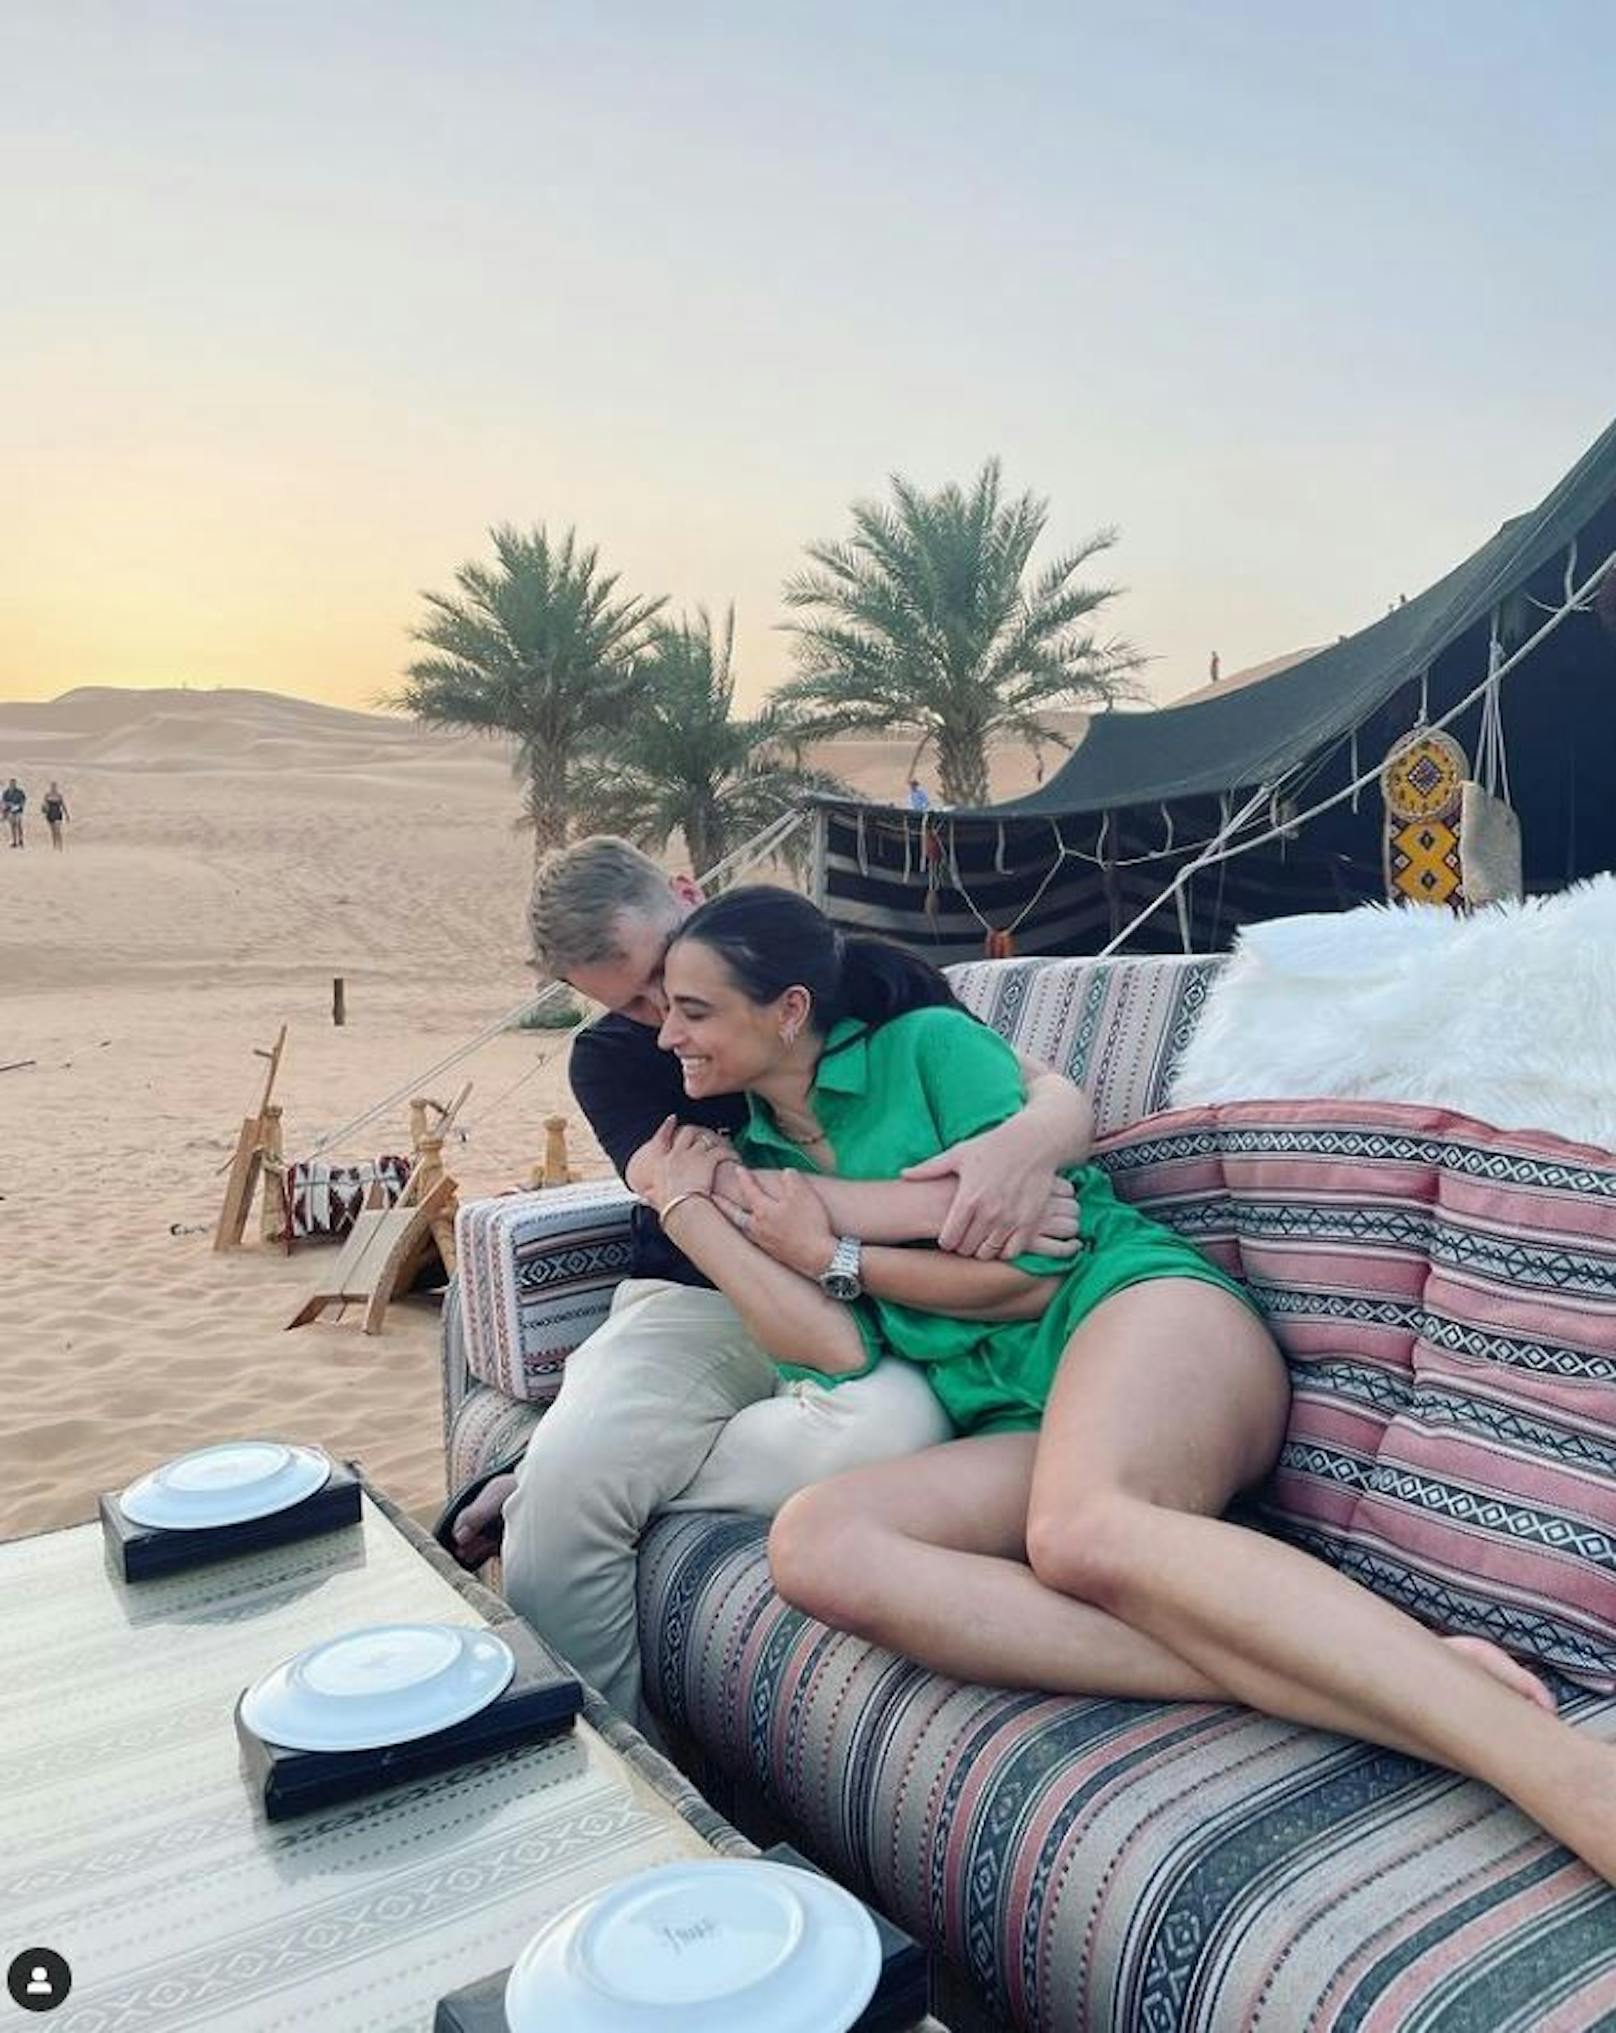 Ein seltenes Kuschelfoto von Oli und Amira Pocher: Die beiden genießen gerade ihren Urlaub in der Wüste.